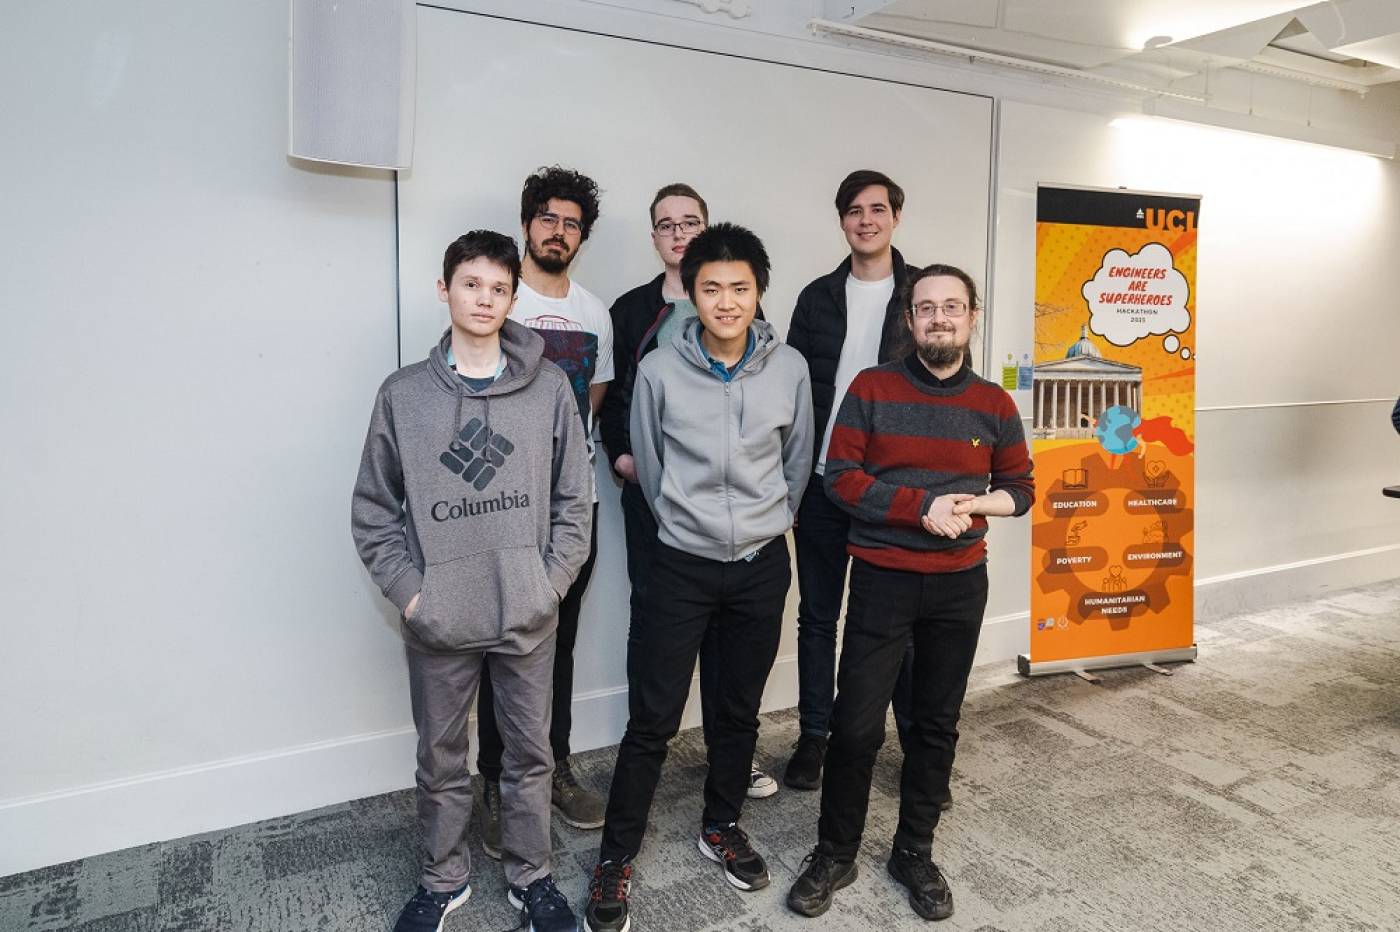 3rd place team winners UCL engineers are superheroes hackathon